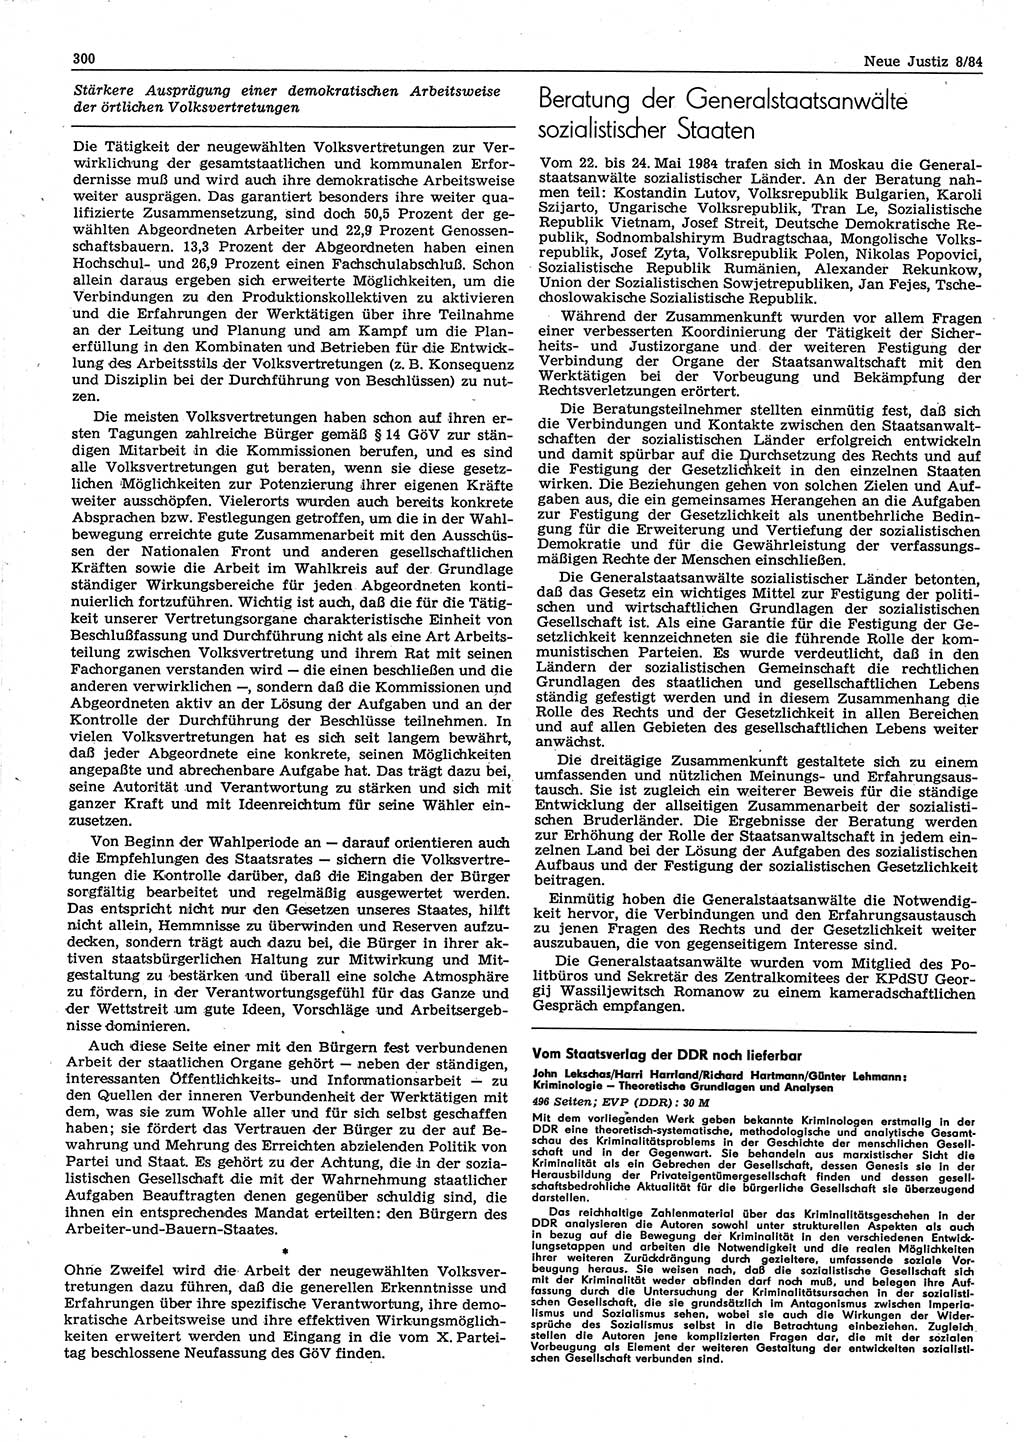 Neue Justiz (NJ), Zeitschrift für sozialistisches Recht und Gesetzlichkeit [Deutsche Demokratische Republik (DDR)], 38. Jahrgang 1984, Seite 300 (NJ DDR 1984, S. 300)